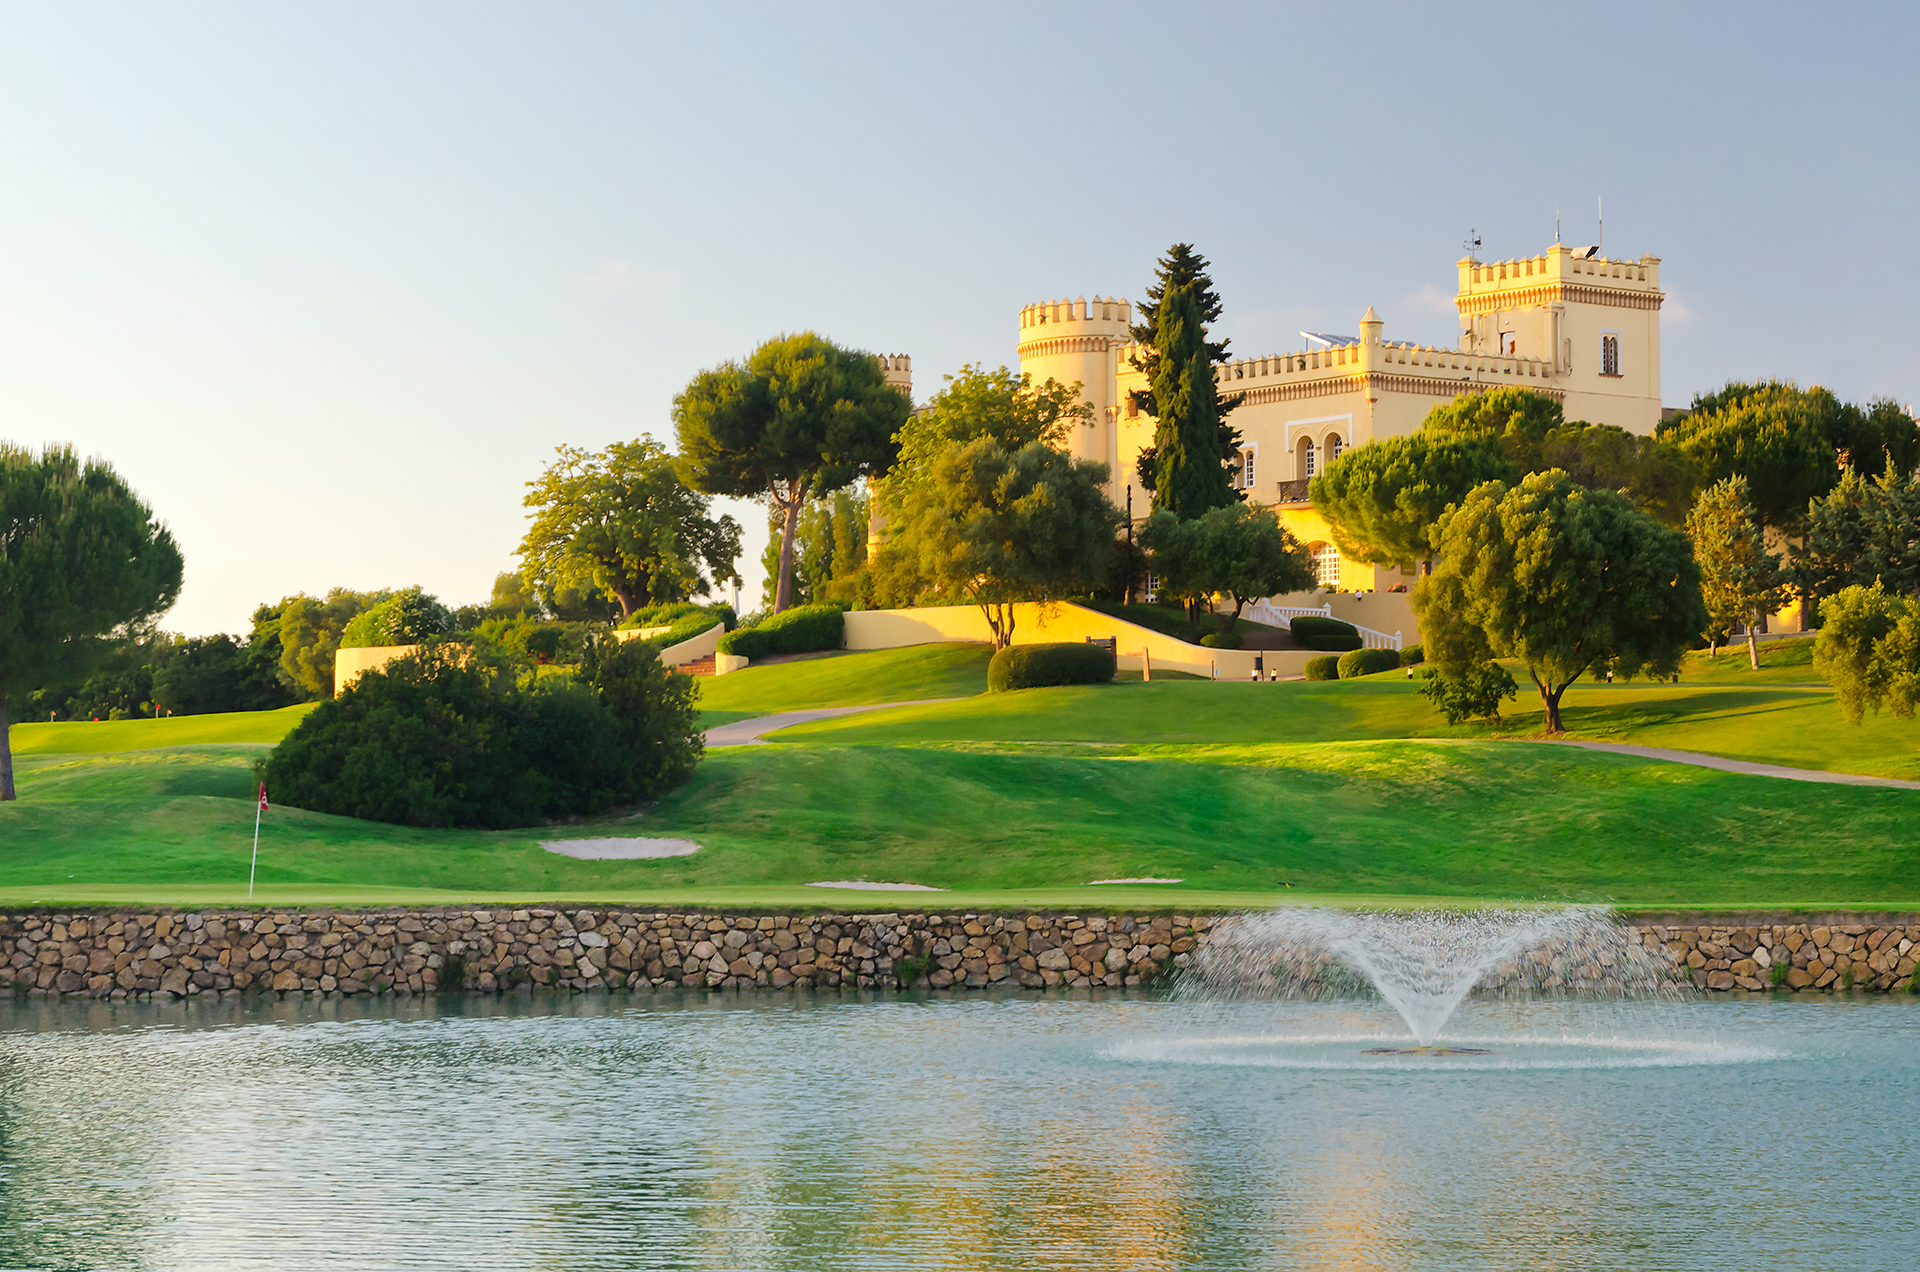 Golf-expedition-golfreizen-golfresort-Spanje-Regio-huelva-barcelo-montecastillo-golf-resort-Vista-Lago-Castillo